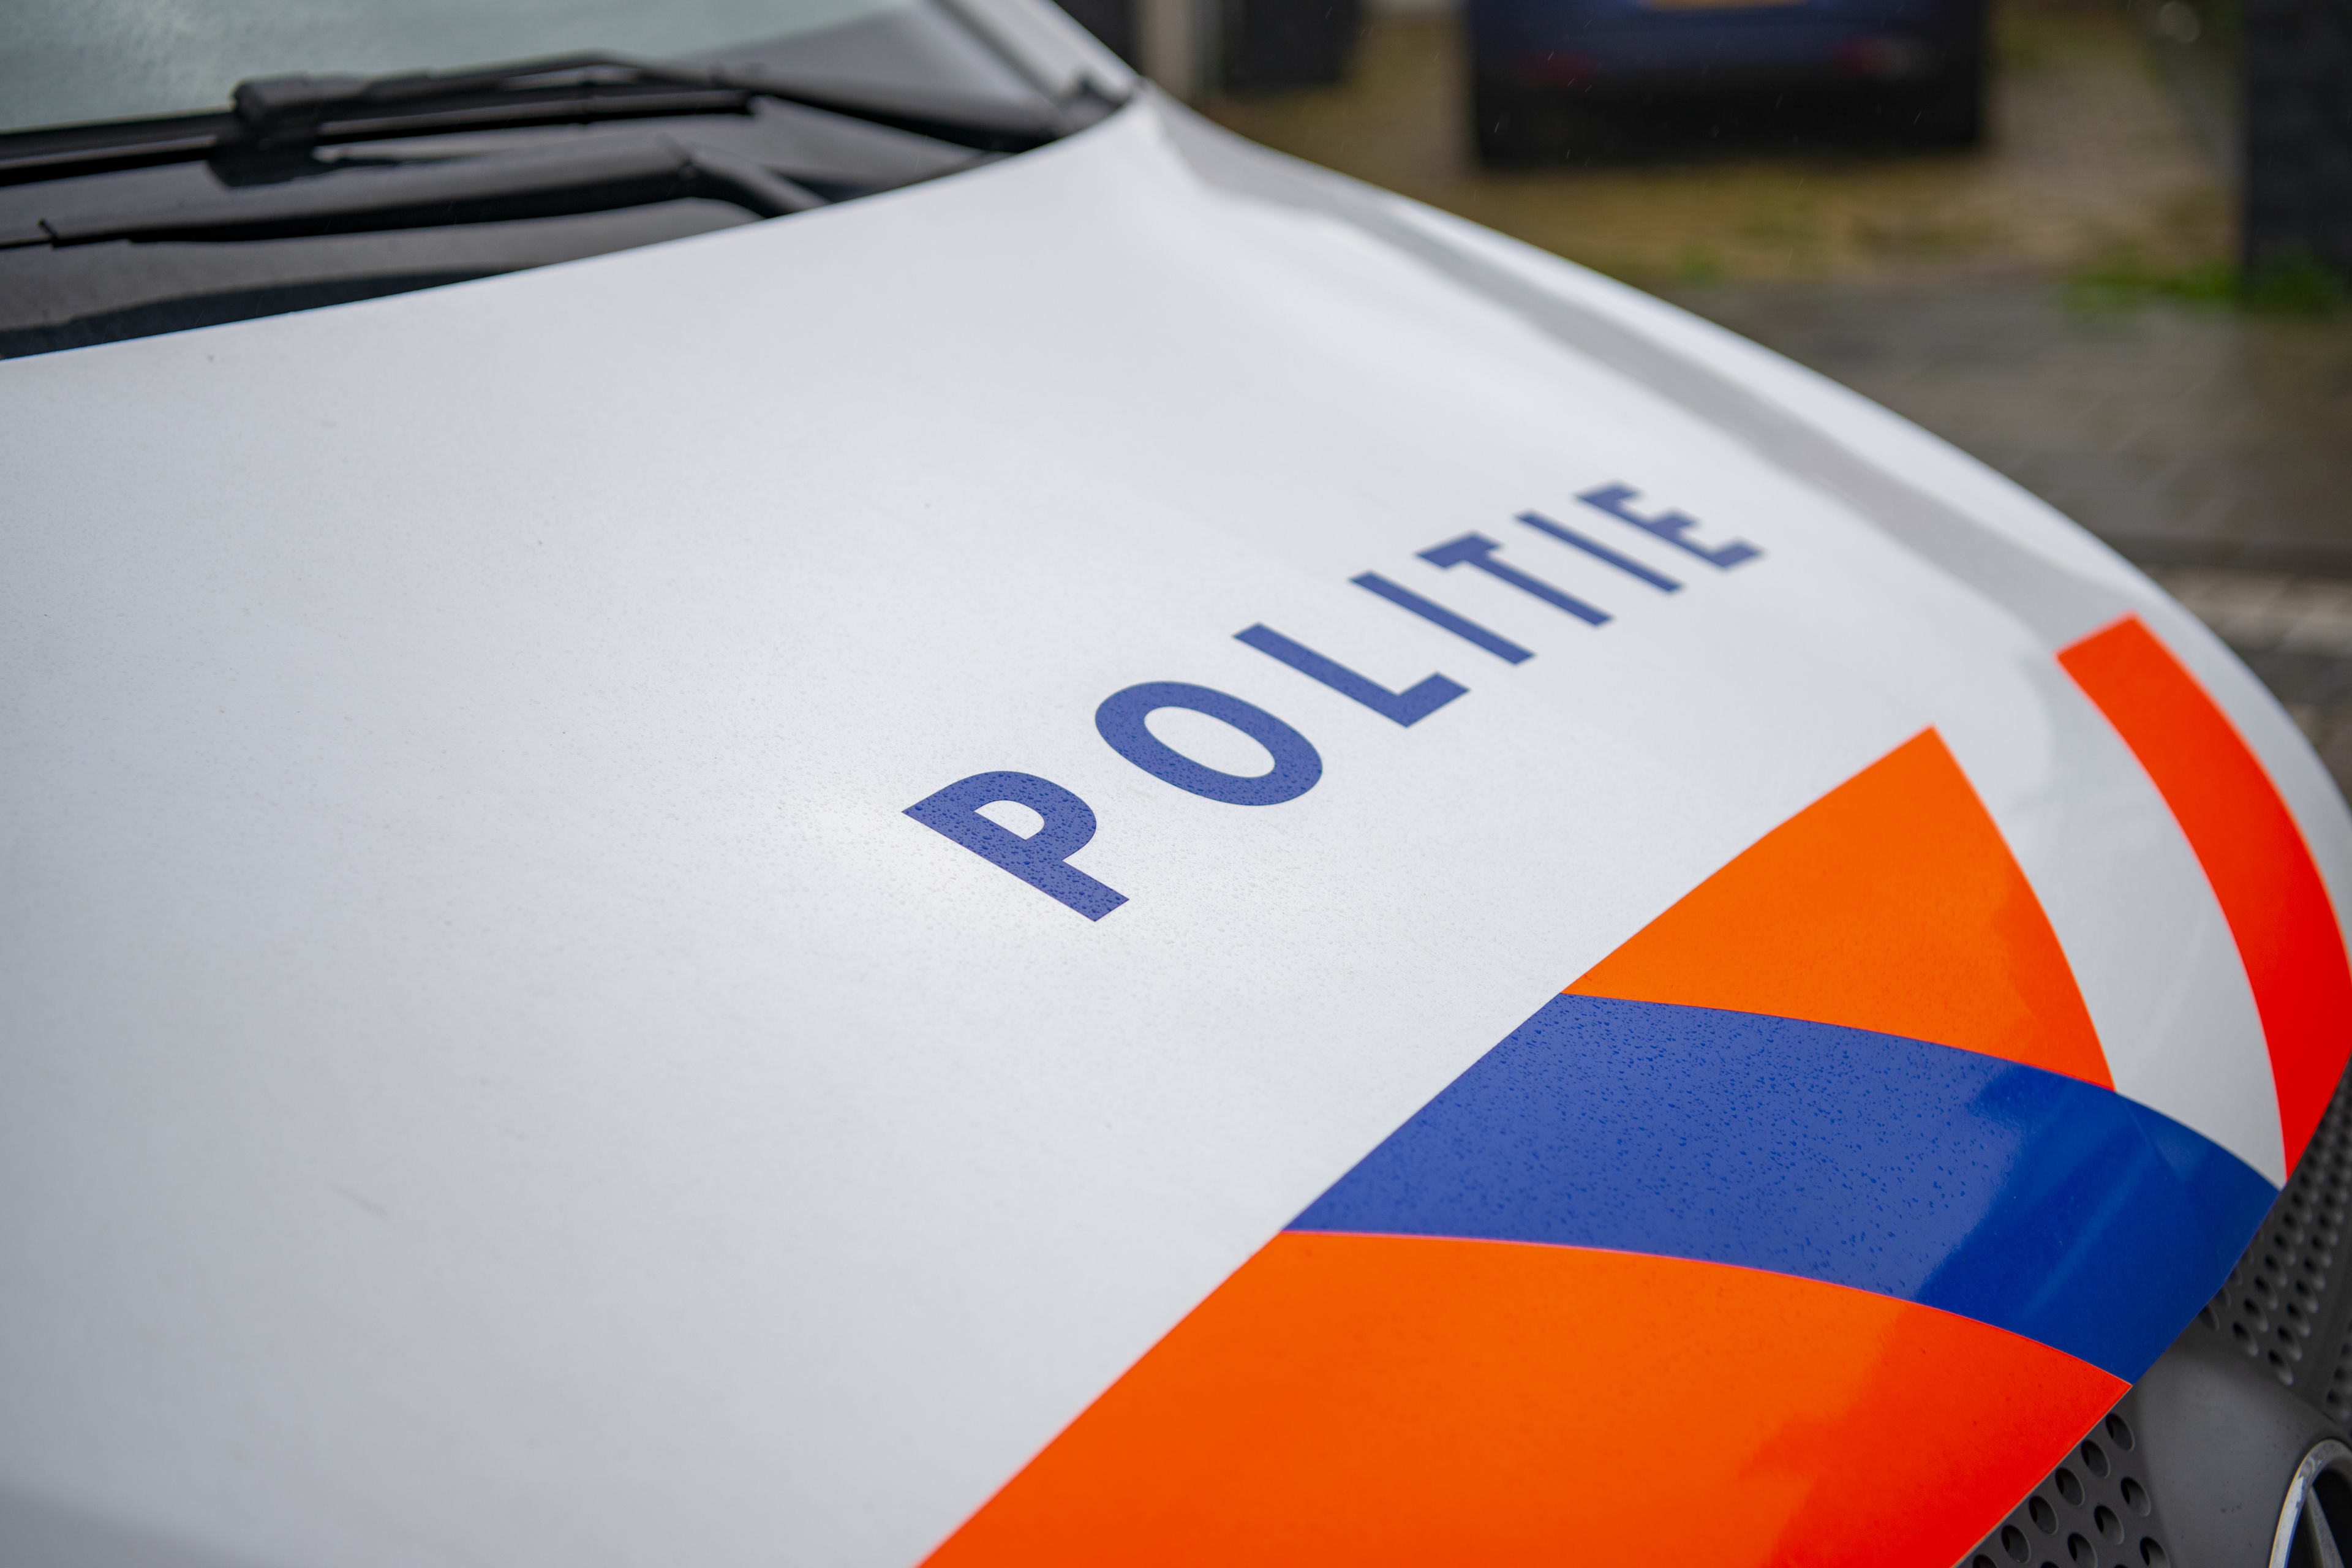 Vermist 16-jarig meisje uit Arnhem is weer terecht